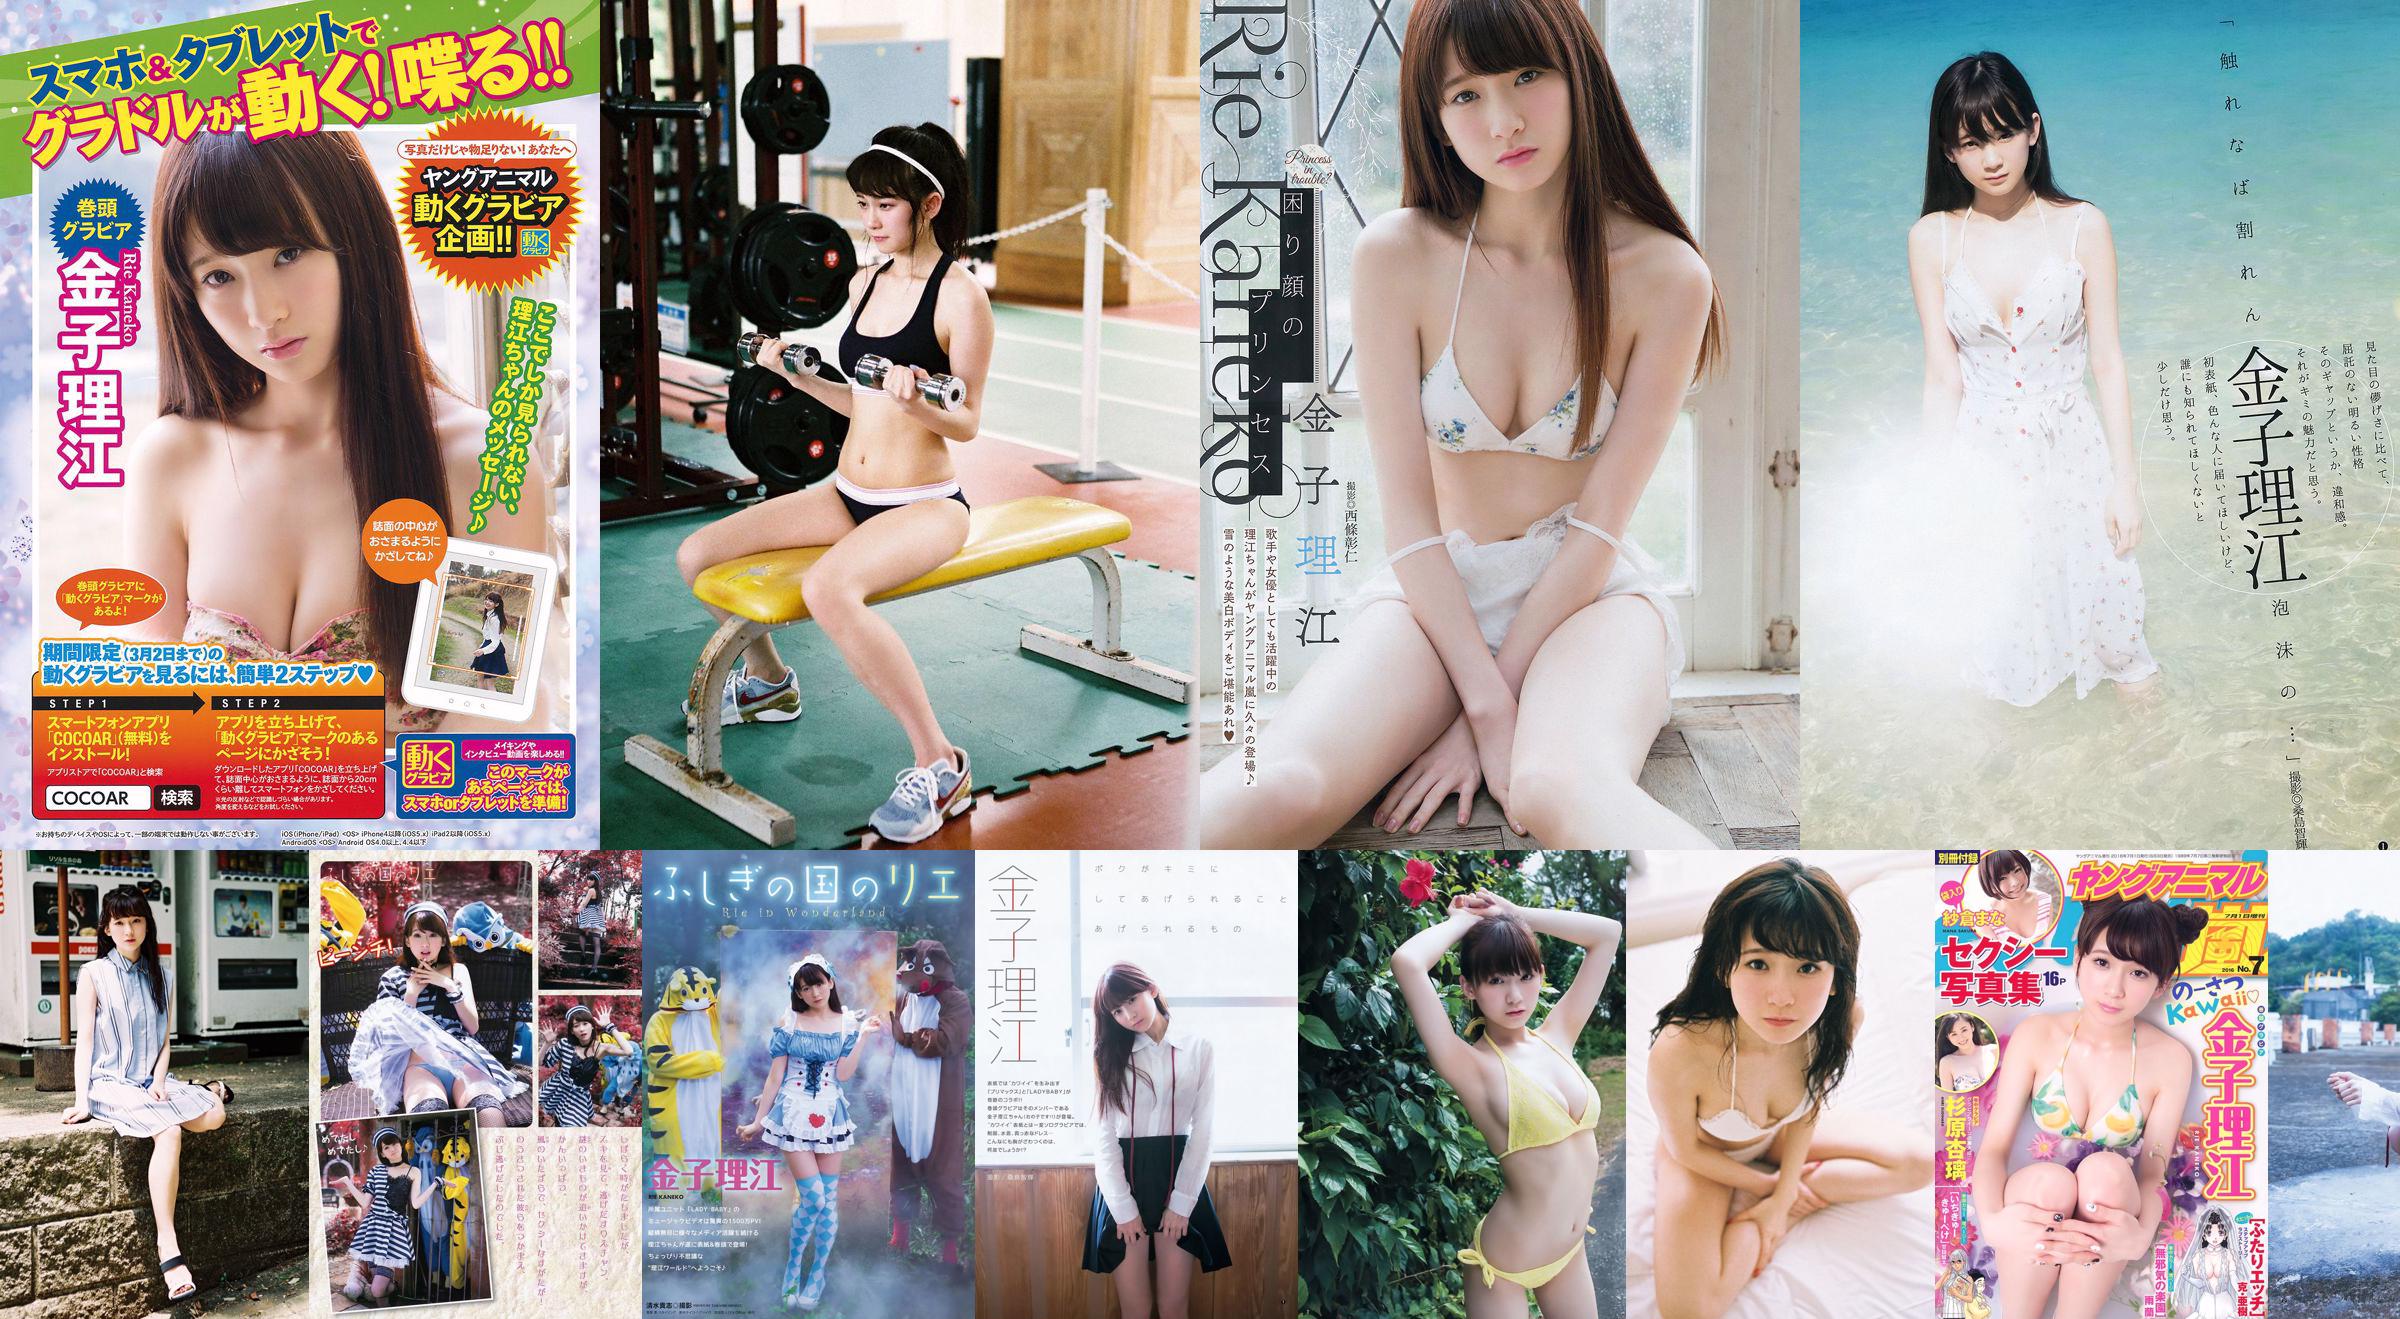 Rie Kaneko, Anri Sugihara, Sakura ま な [Young Animal Arashi Special Issue] No.07 2016 Photo Magazine No.de8835 Página 10